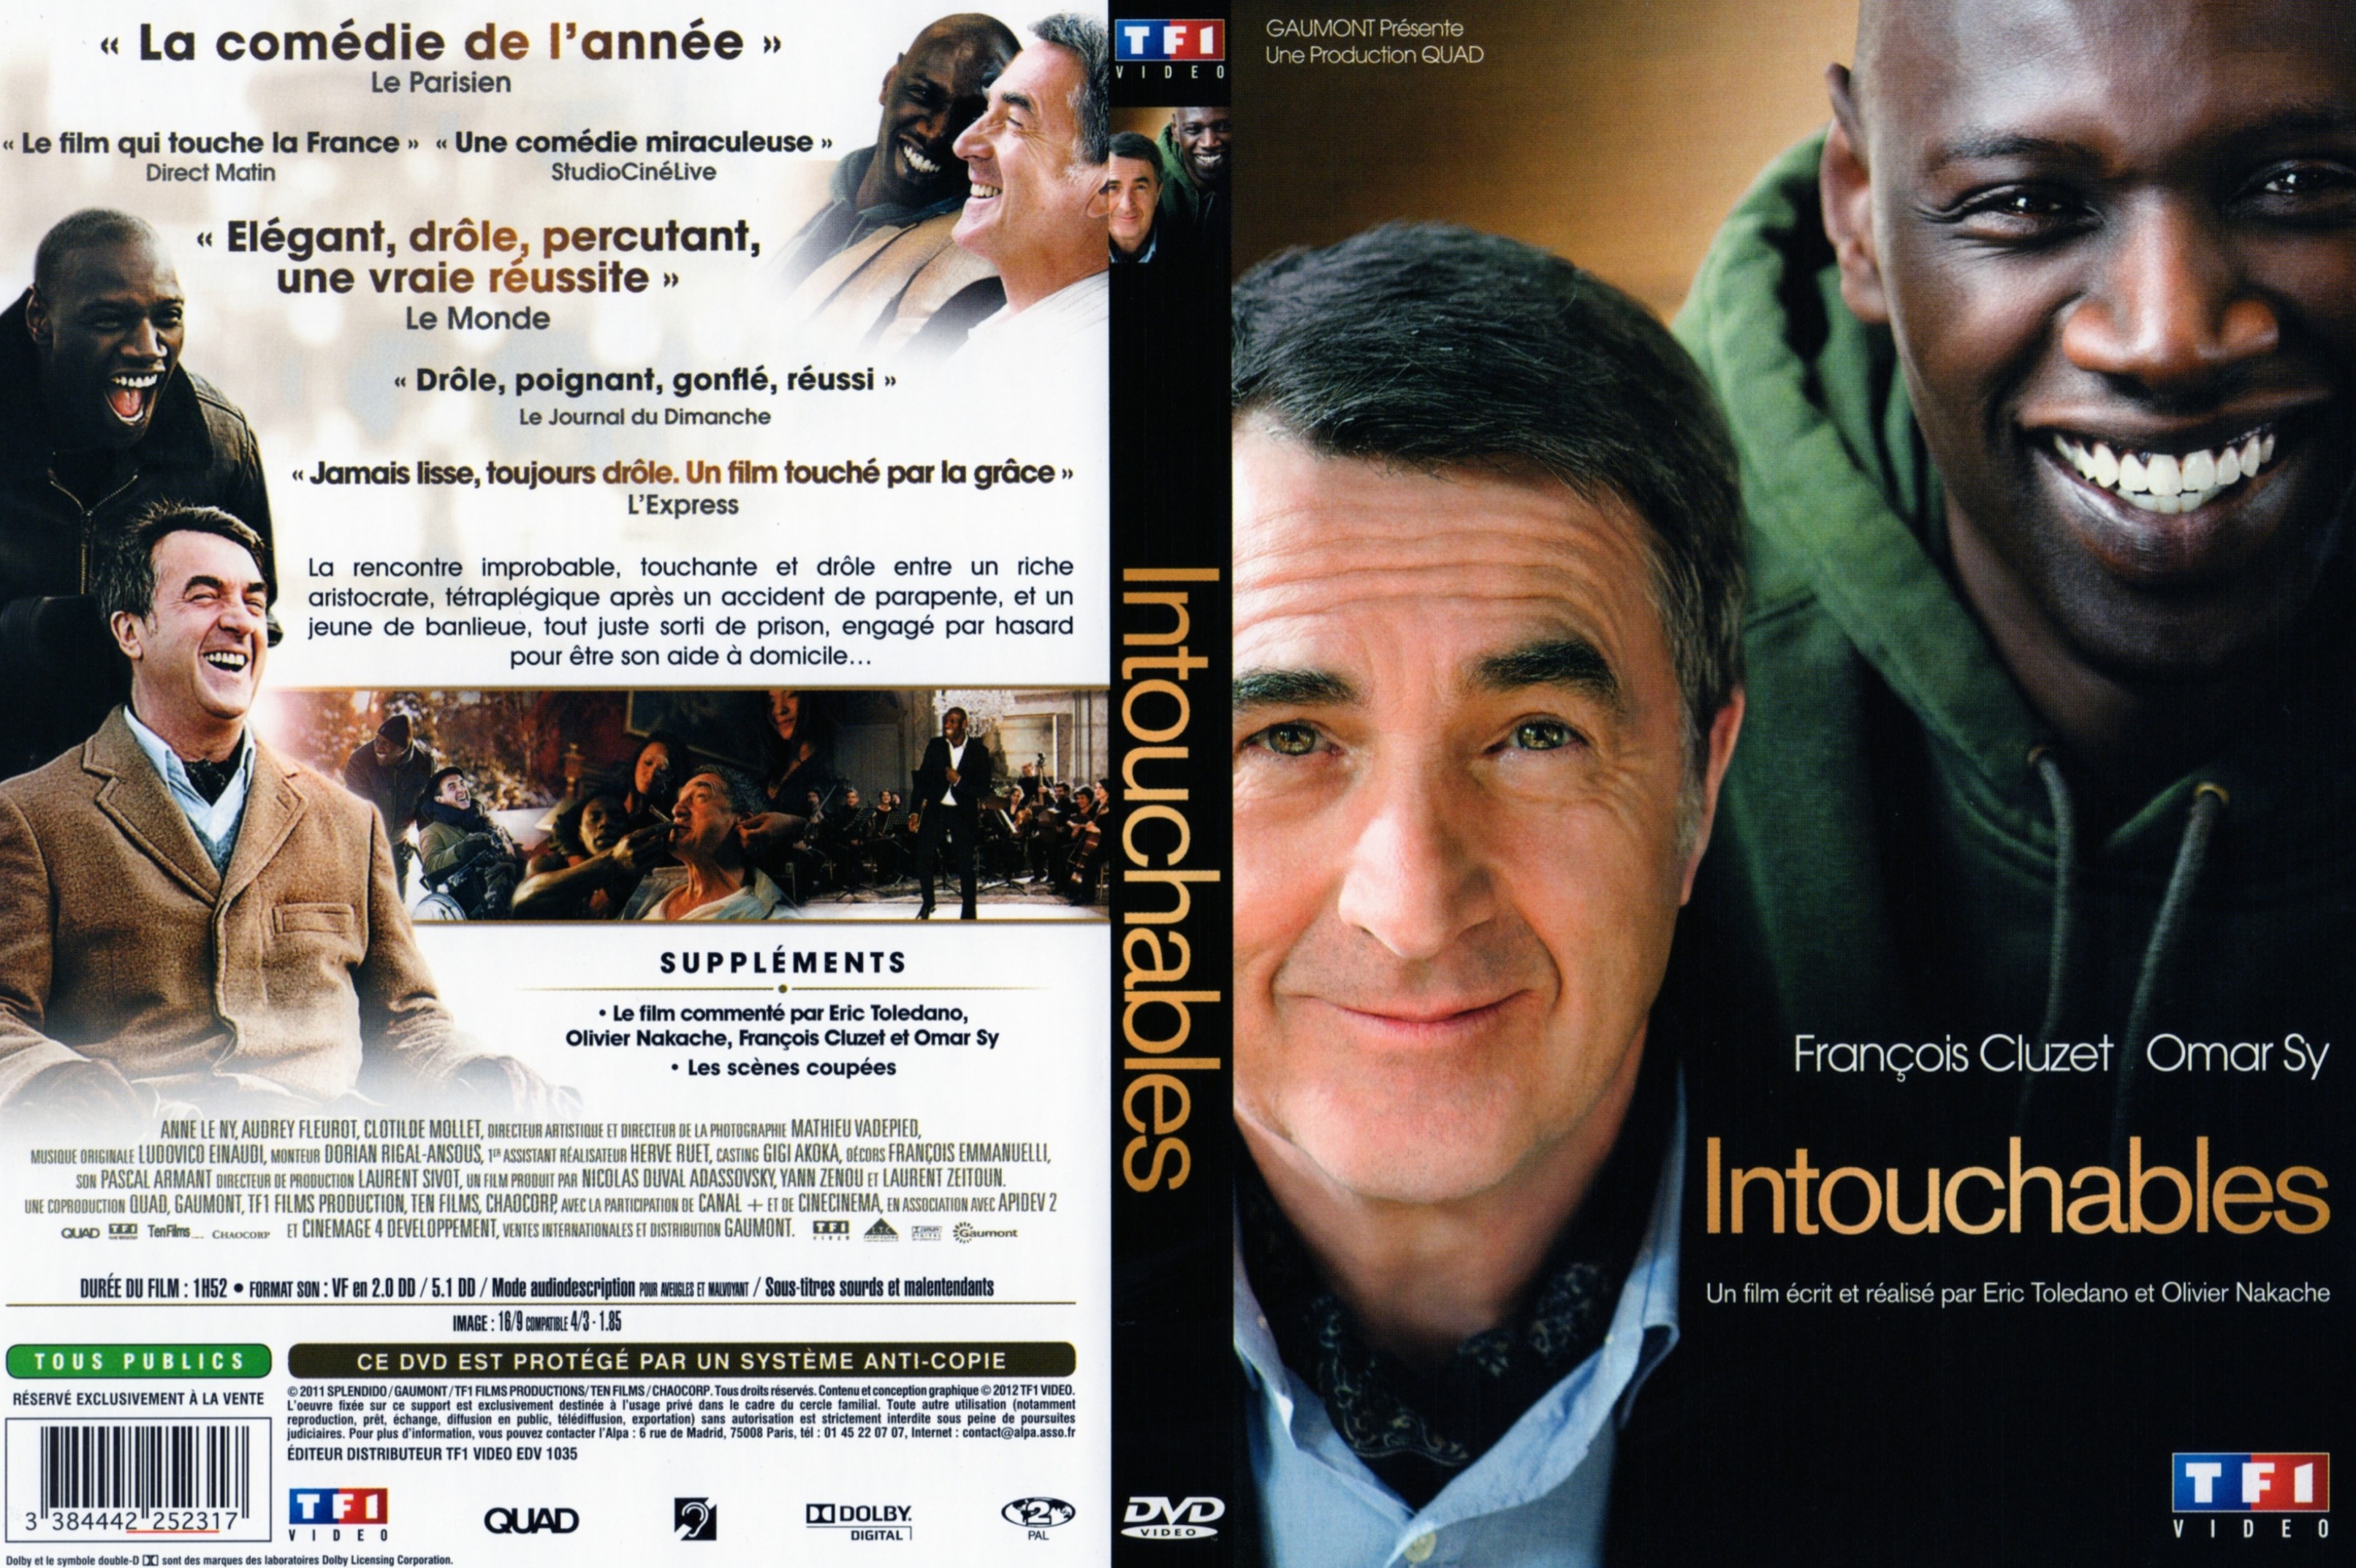 Jaquette DVD Intouchables